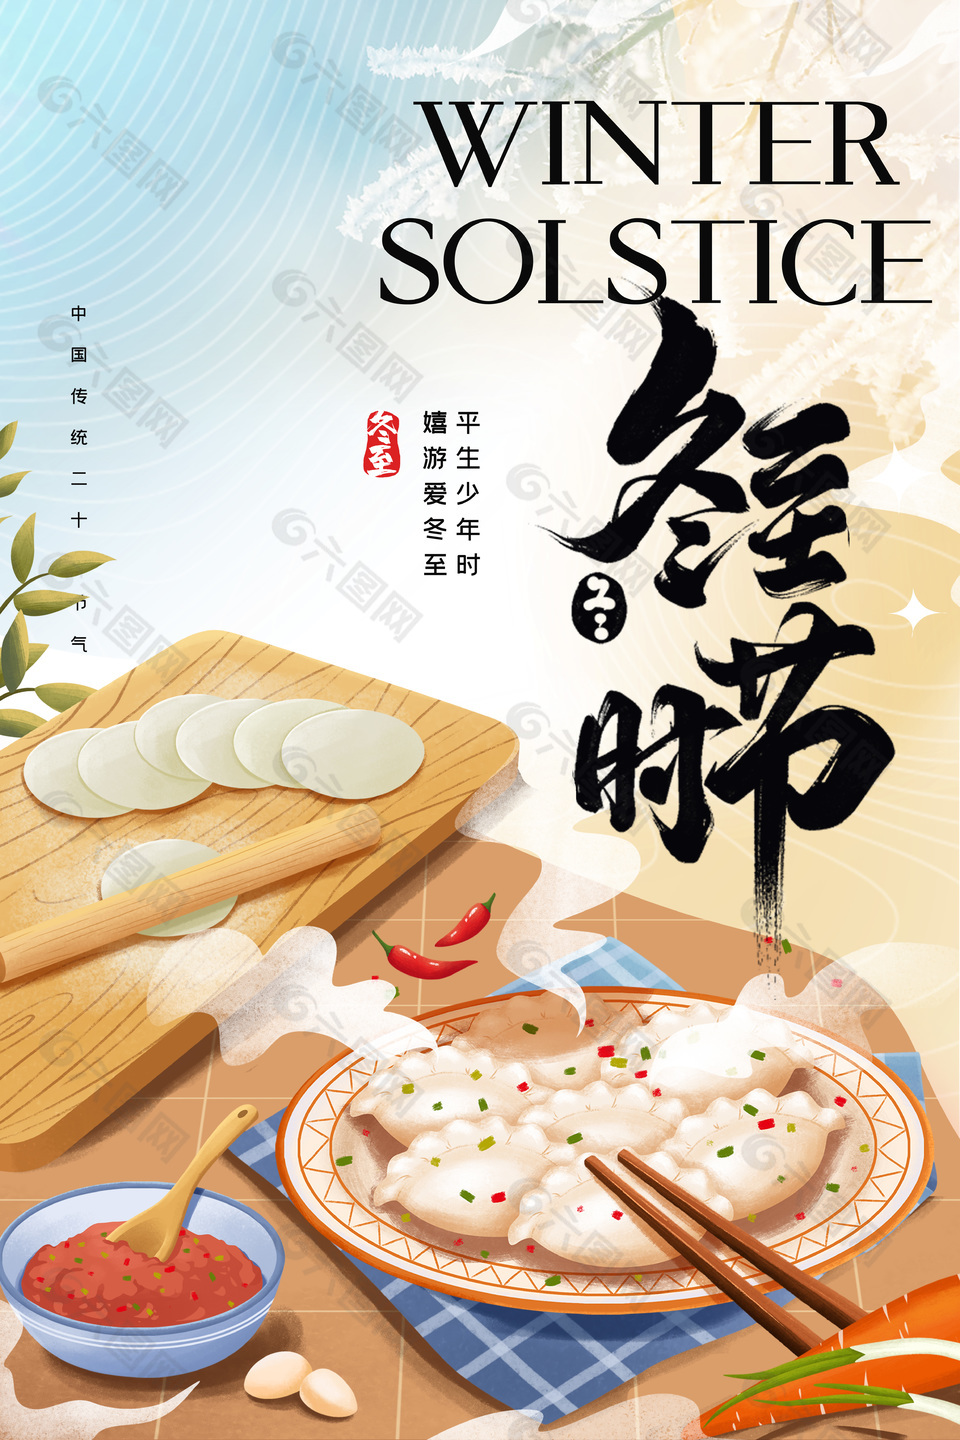 冬至时节吃饺子温馨插画海报素材